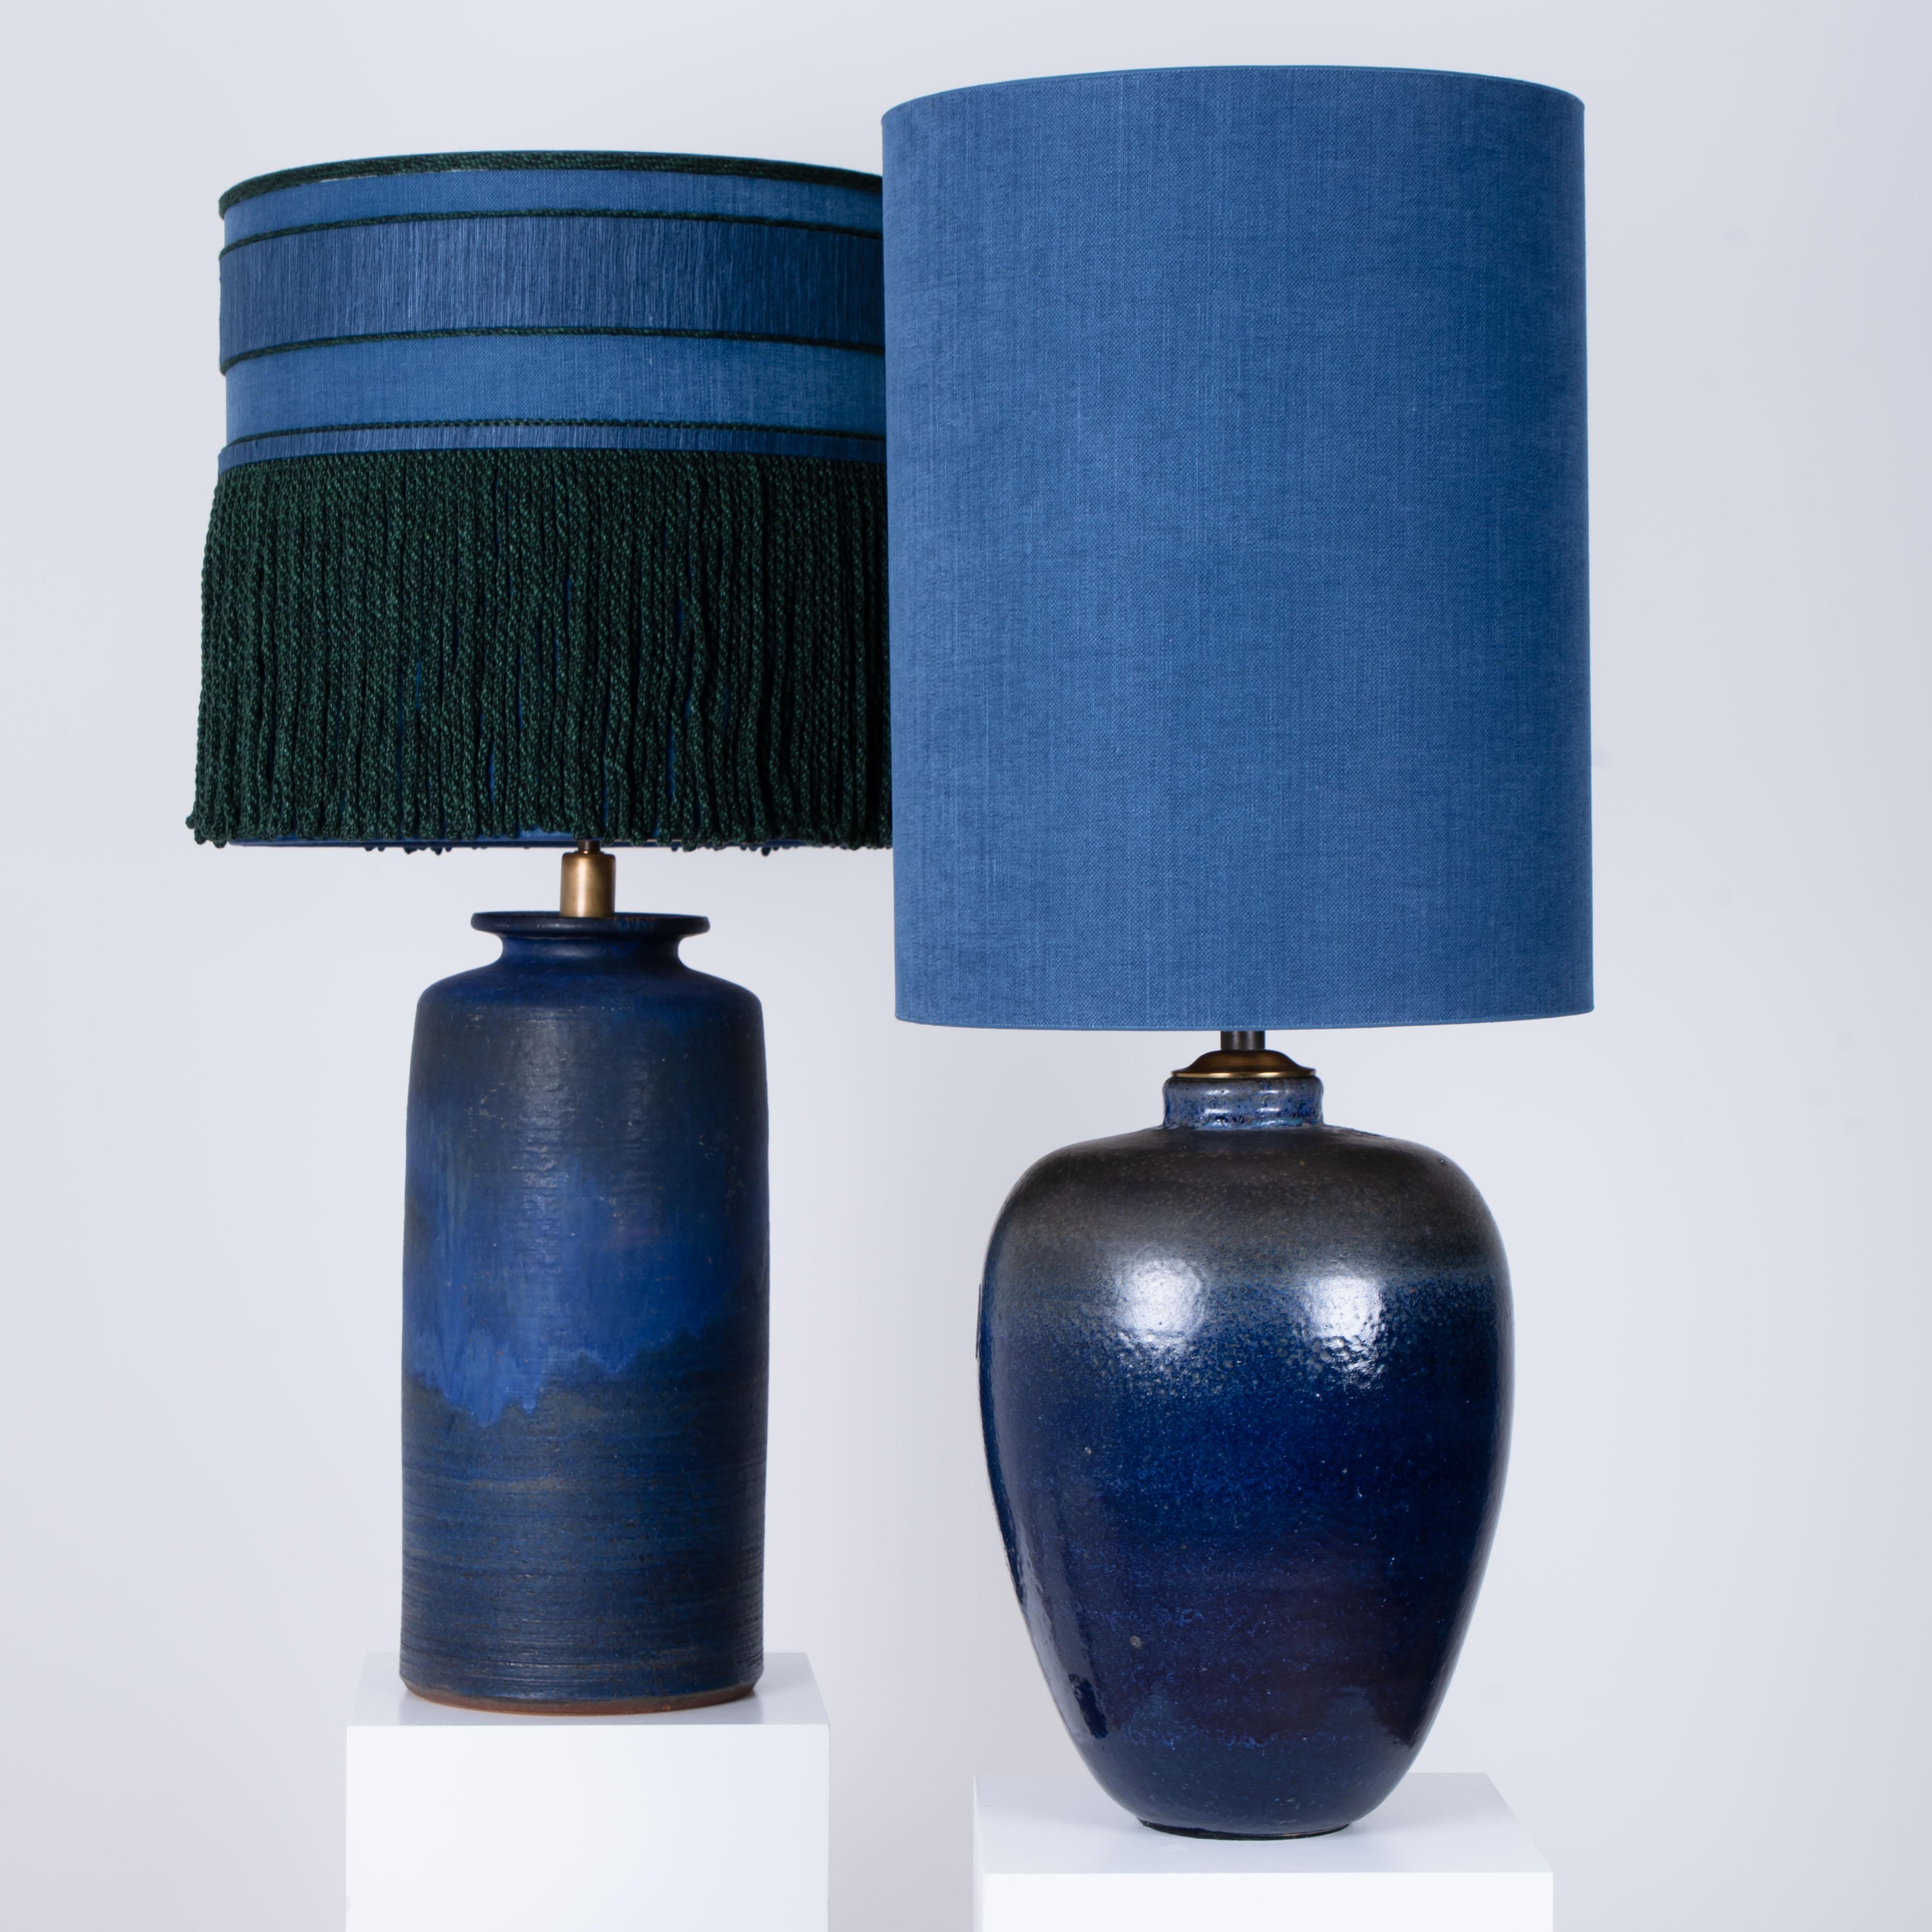 Ein außergewöhnliches Paar hochwertiger Keramik-Tischlampen, Dänemark, 1960er Jahre. Skulpturale Stücke aus handgefertigter Keramik in Blautönen. Mit einer Kombination aus glasierten und mit neuen maßgefertigten Seidenlampenschirmen von René Houben.